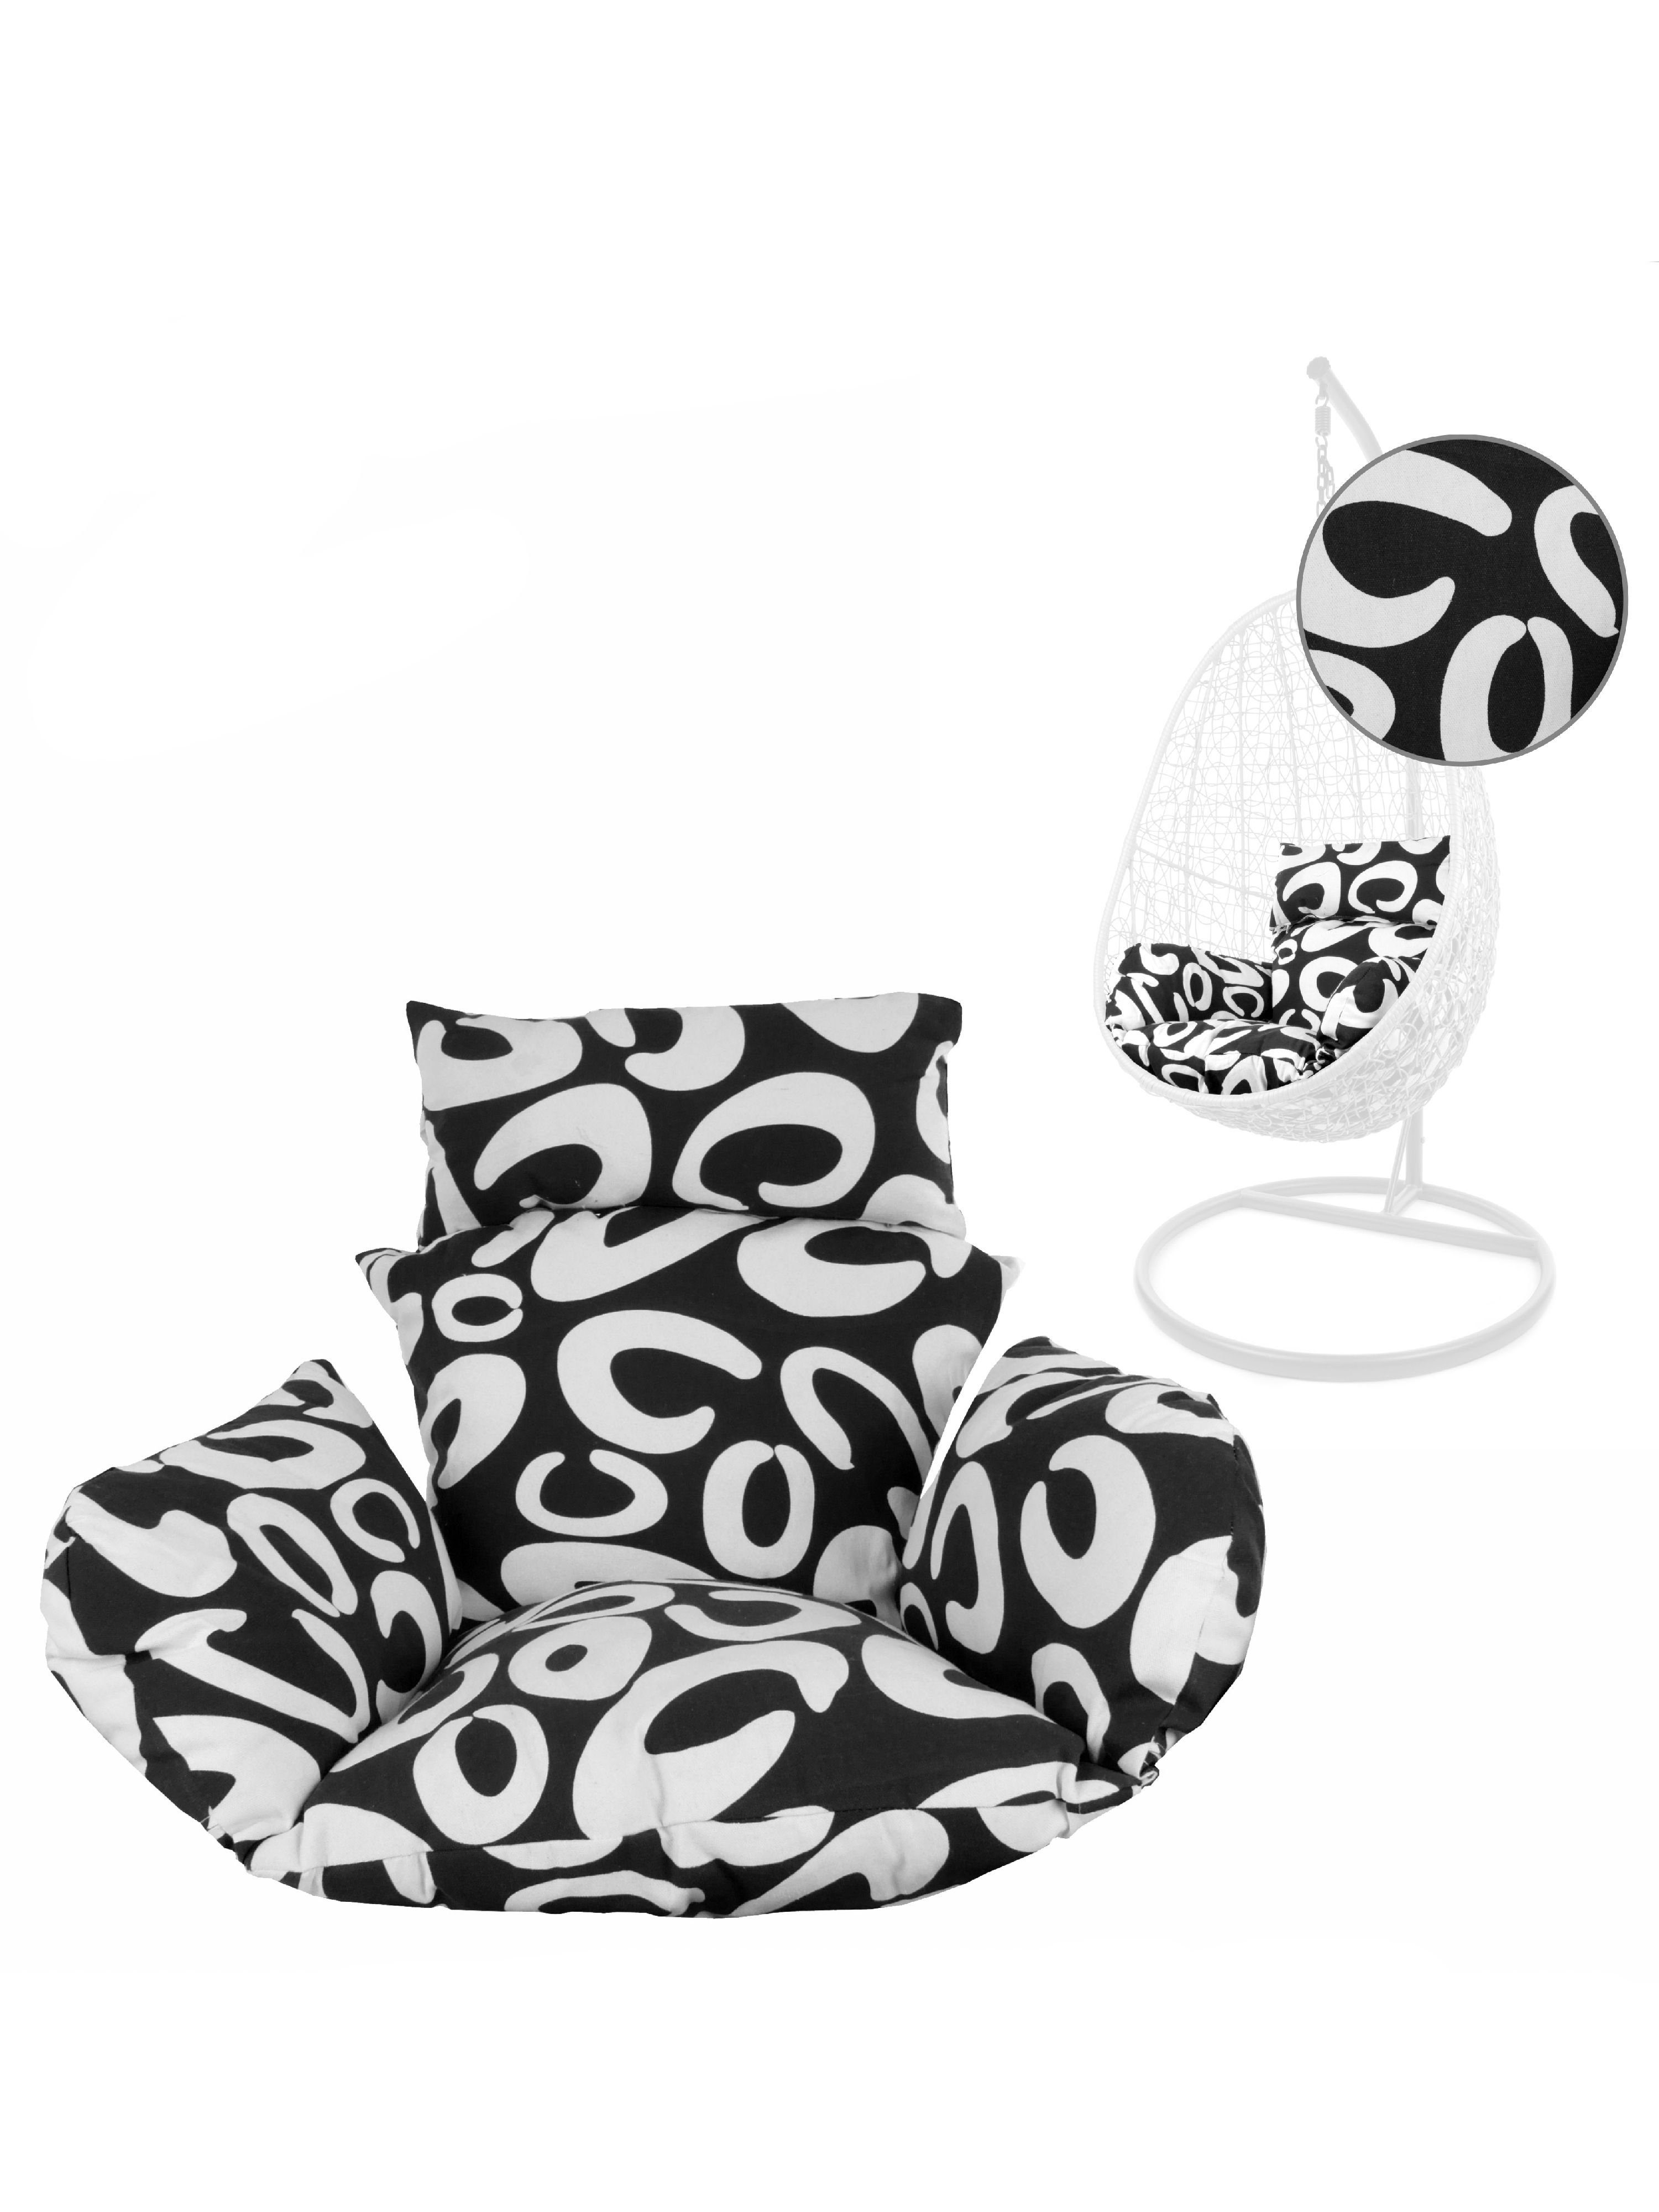 KIDEO Sitzkissen Nest-Kissen verschiedene Muster, (1 St), Polsterkissen, gemütlich, mit Reißverschluss, verschiedene Muster schwarz-weiß gemustert (9910 curly black)